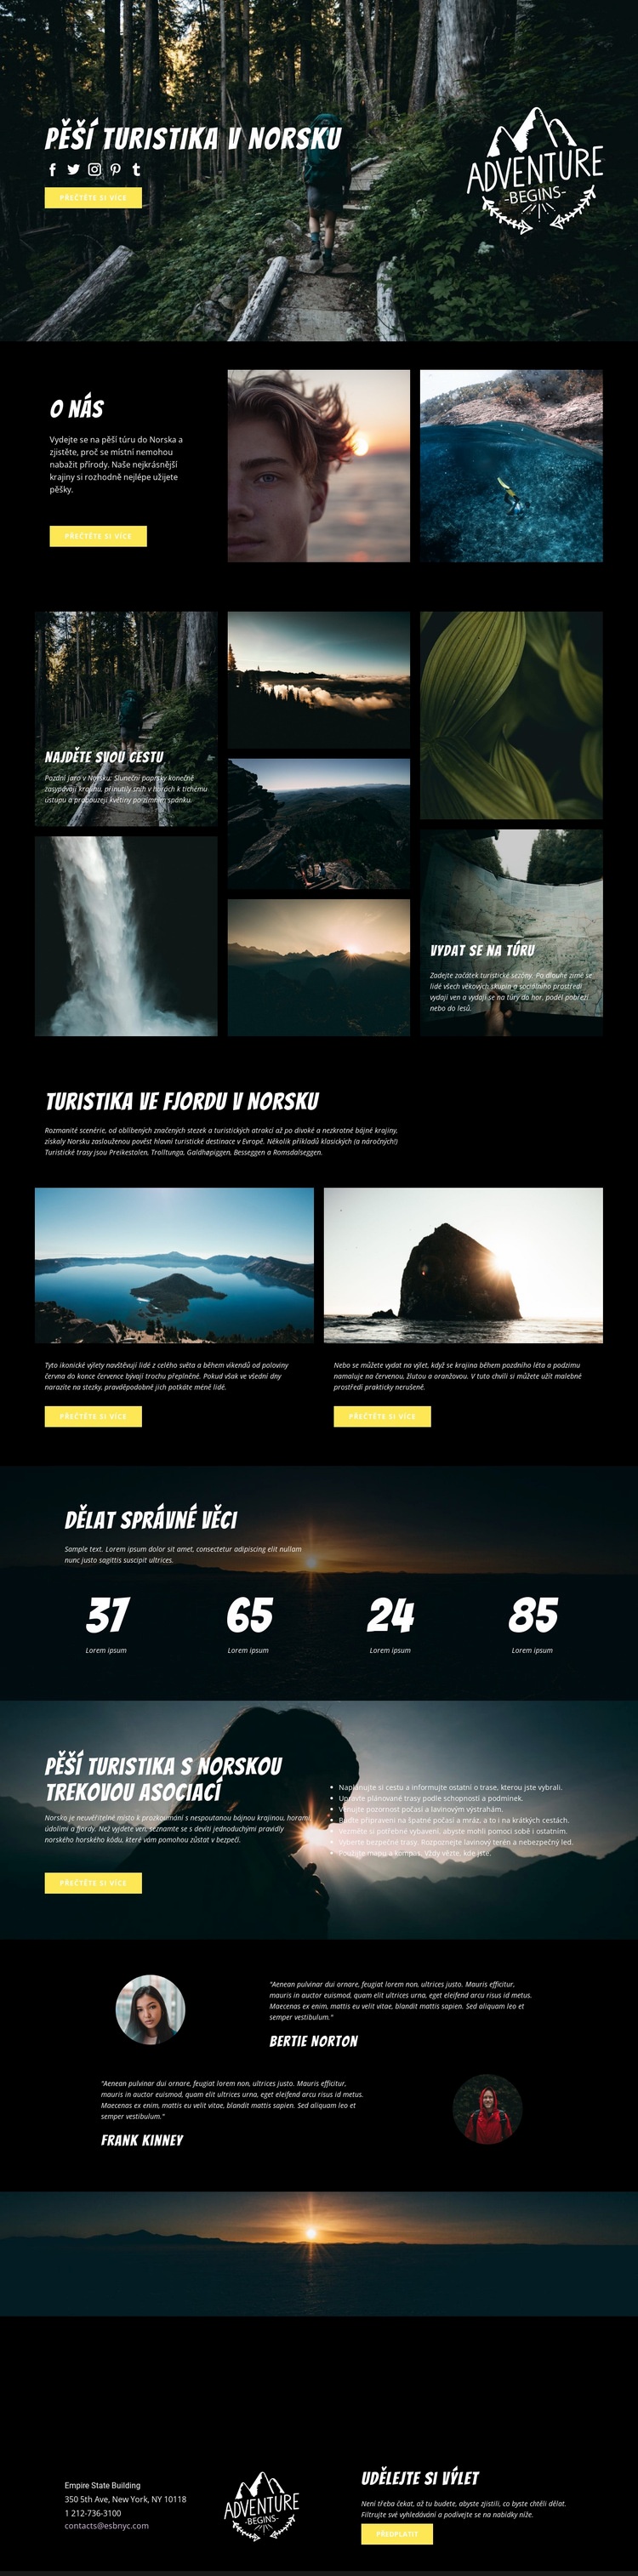 Norsko Webový design